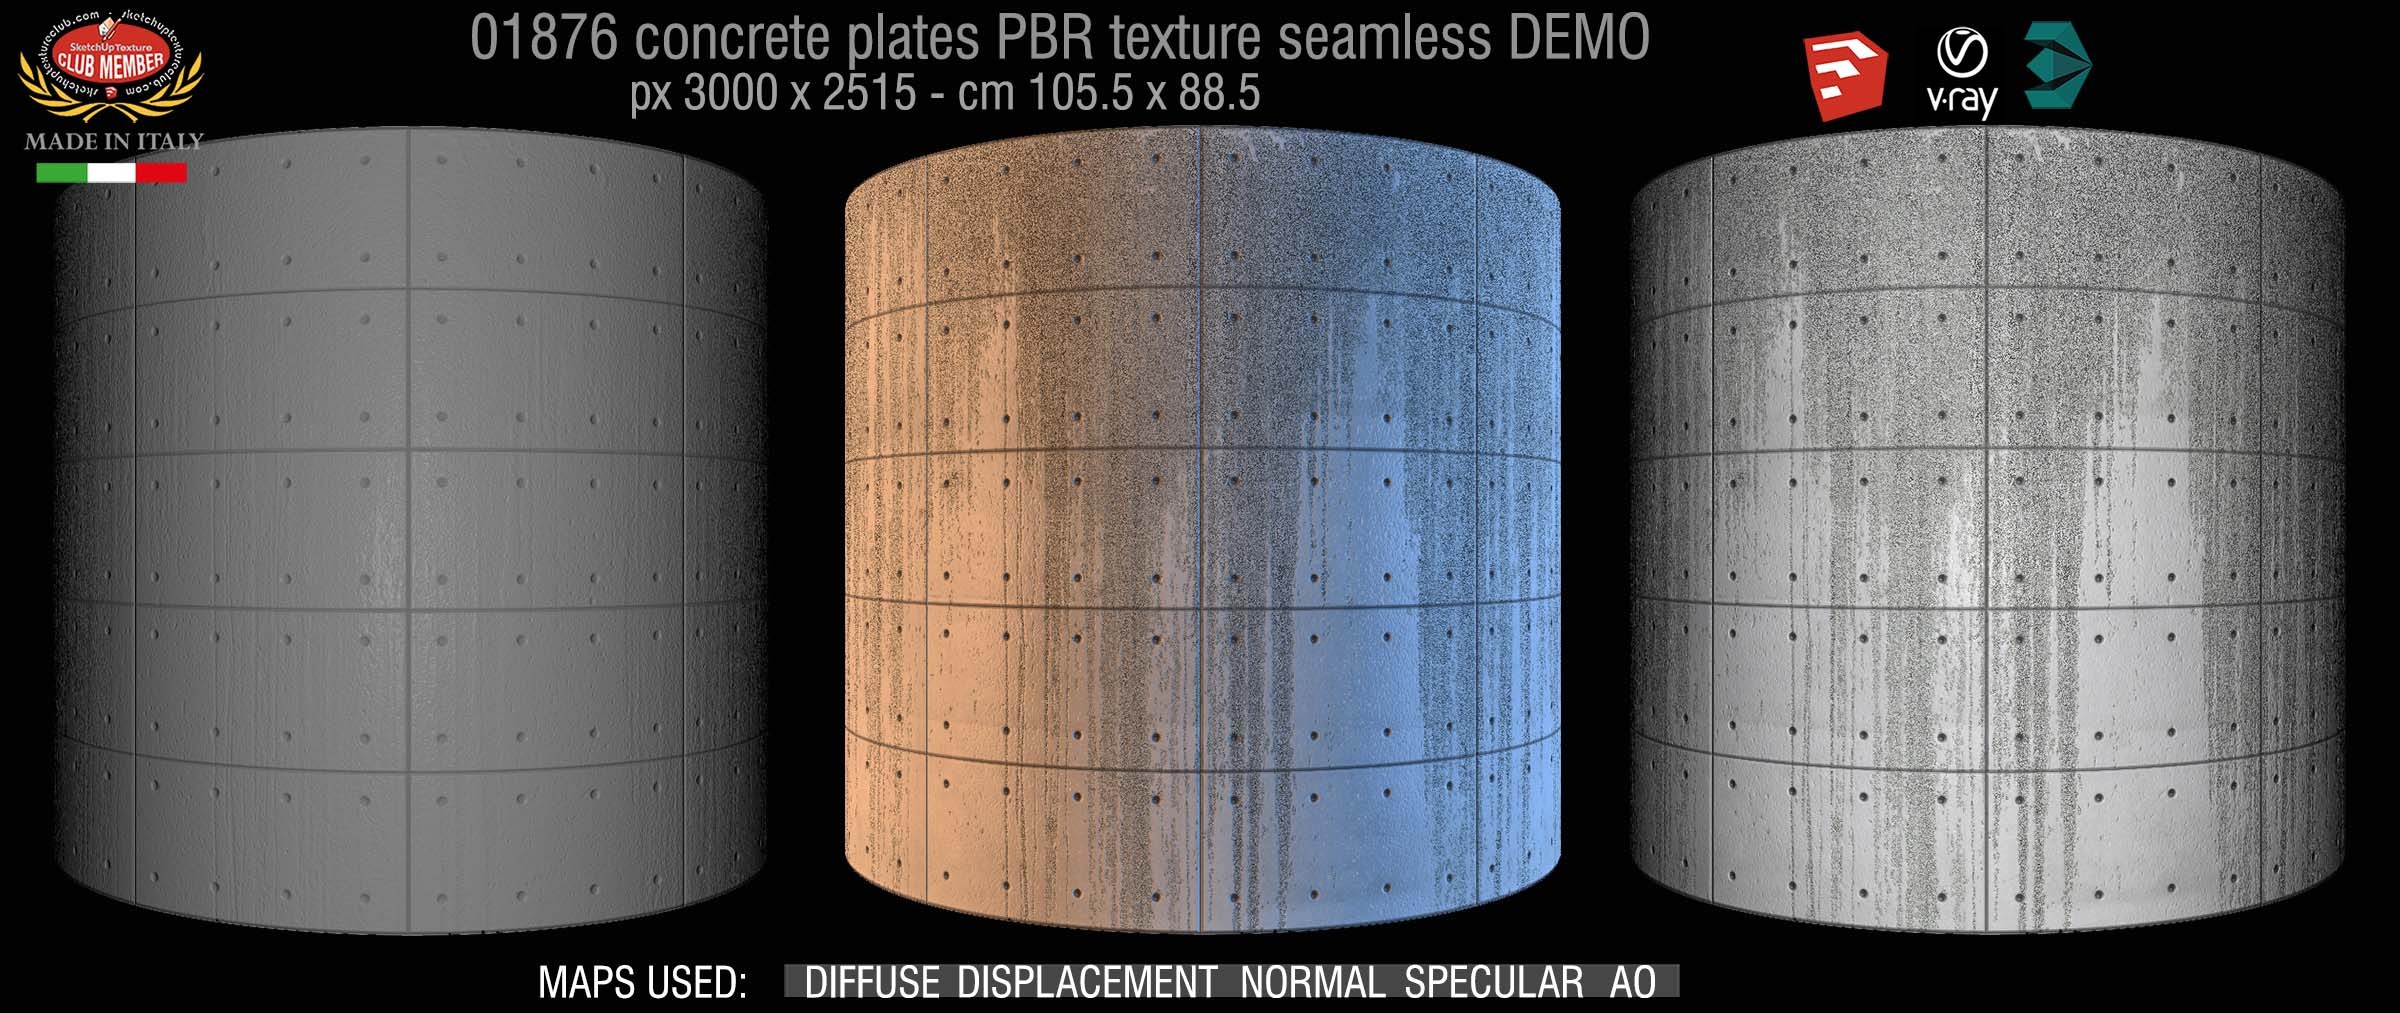 01876 Tadao Ando concrete plates PBR texture seamless DEMO